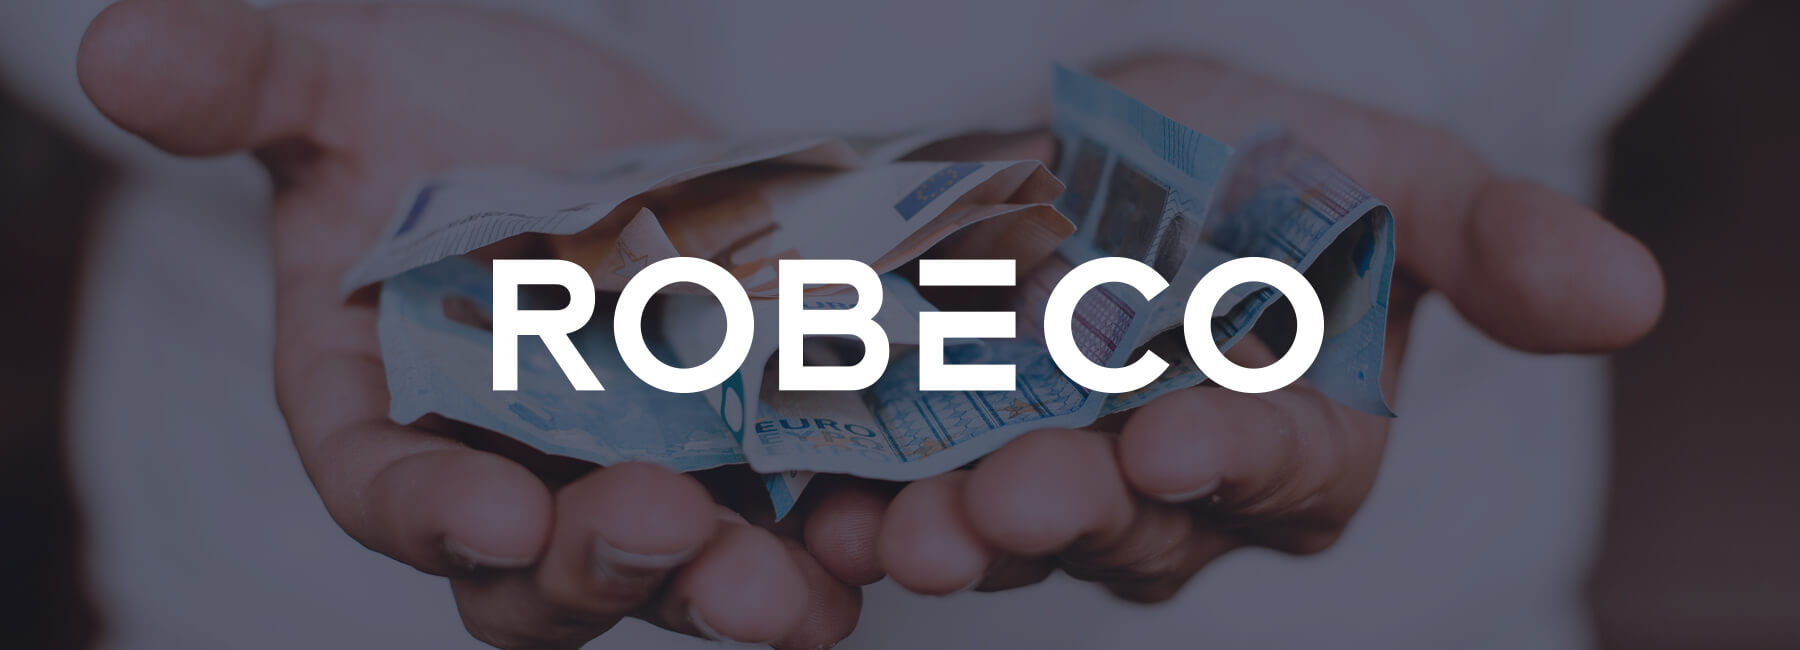 Online-Erlebnis verbessert bei Robeco durch Kundenfeedback